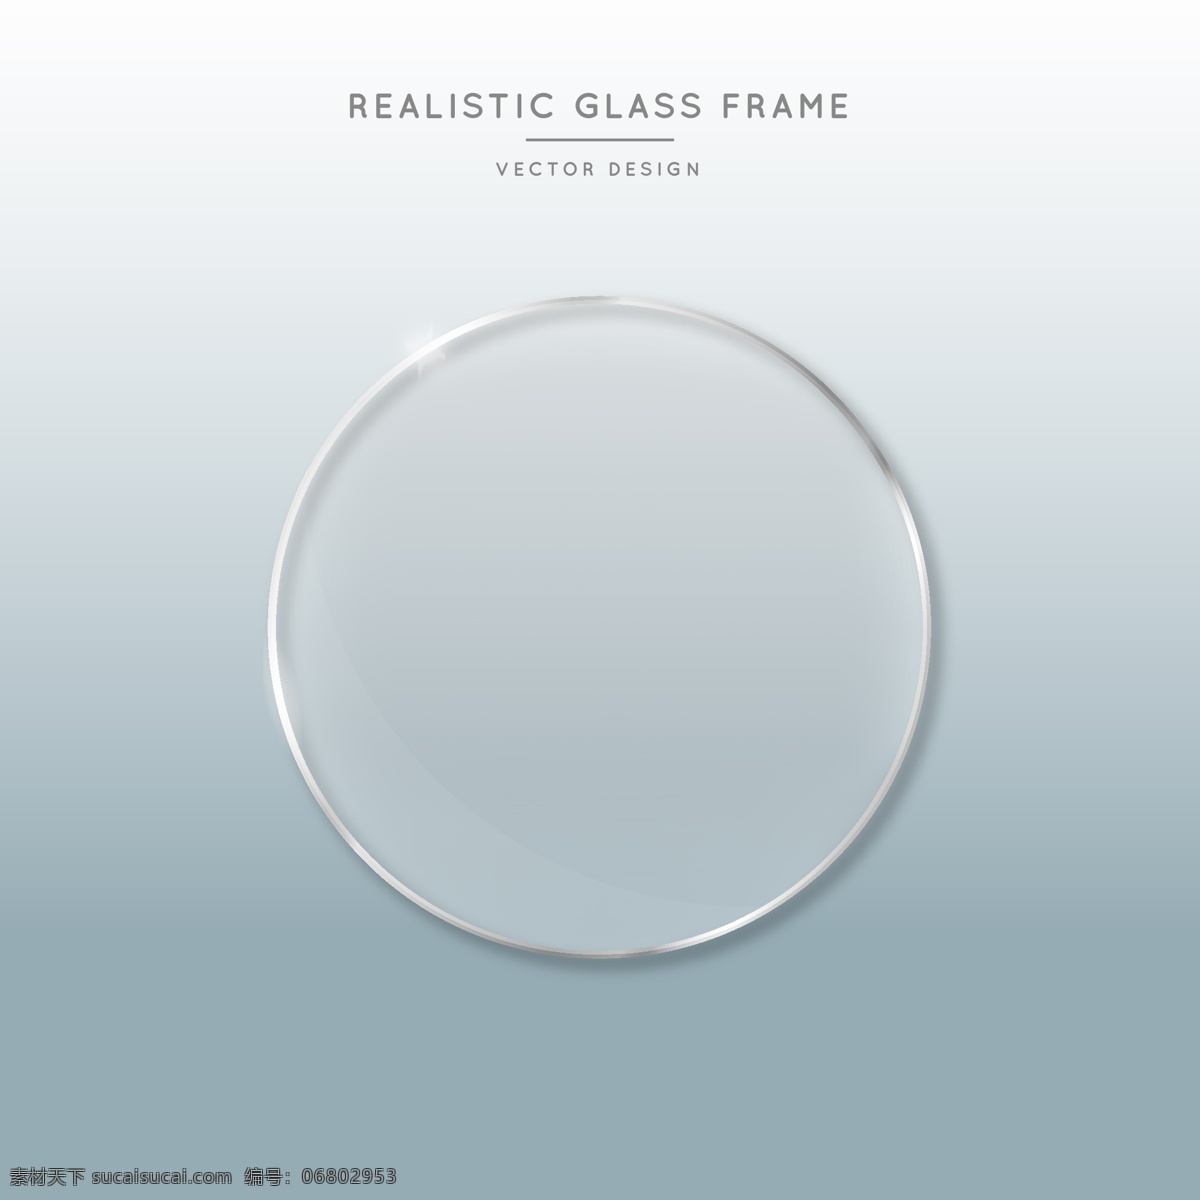 玻璃片图片 玻璃材质 眼镜片 玻璃圆 亚克力片 亚克力圆